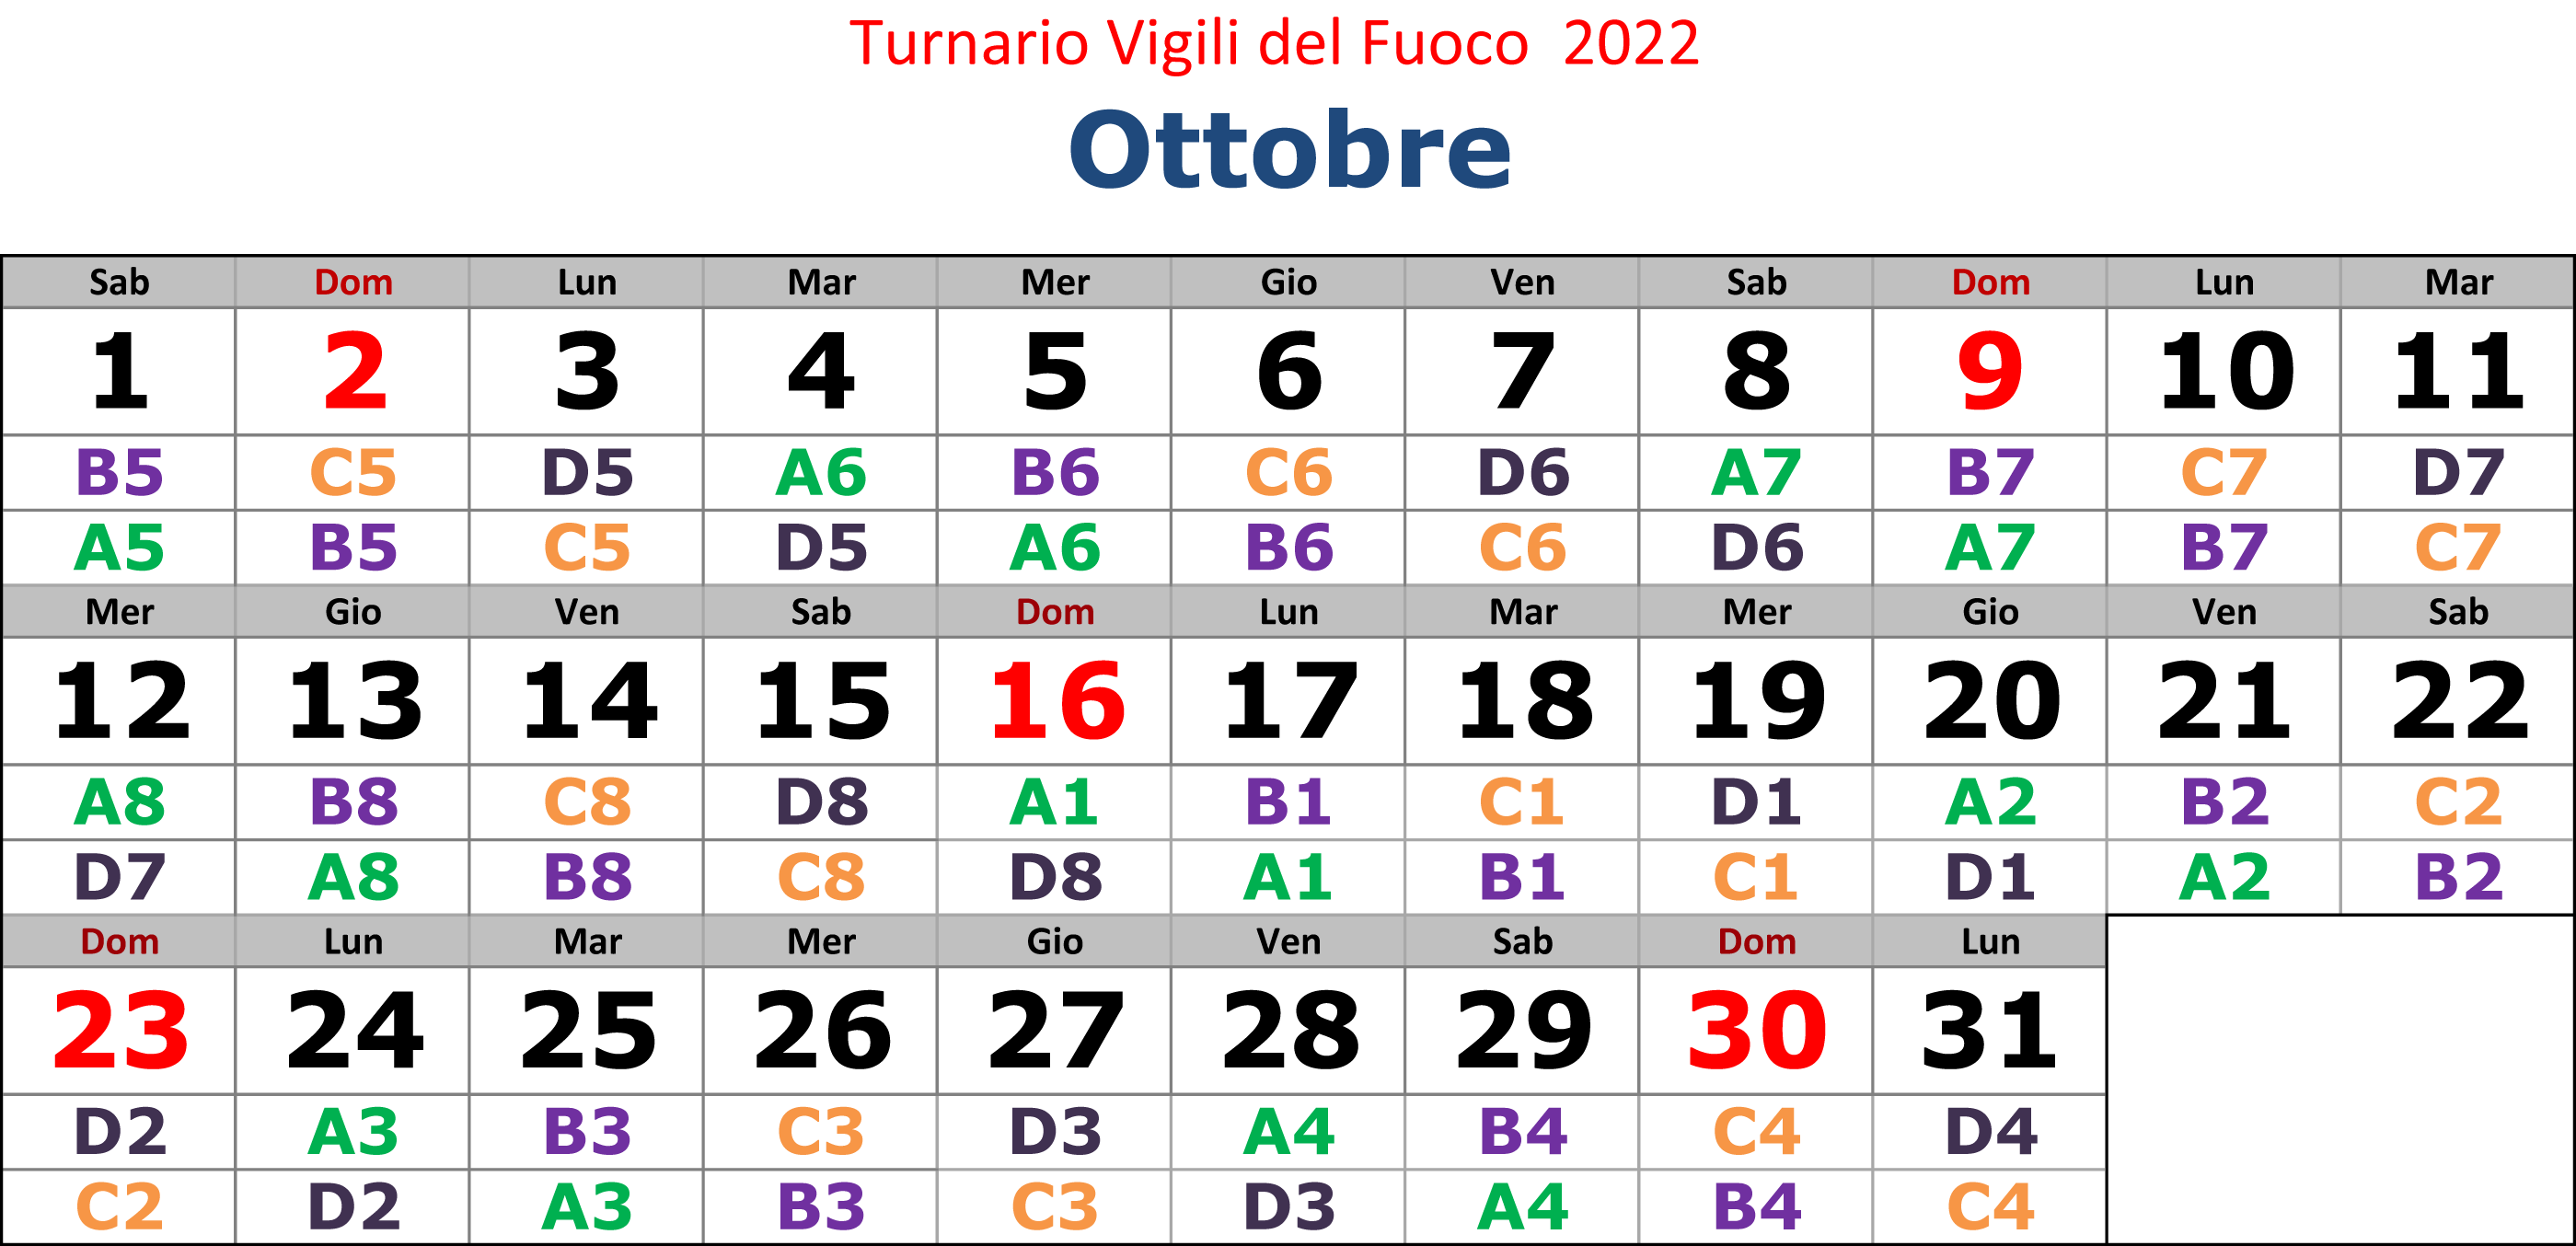 Turnario 2022 realizzato da Vigilfuoco.net 